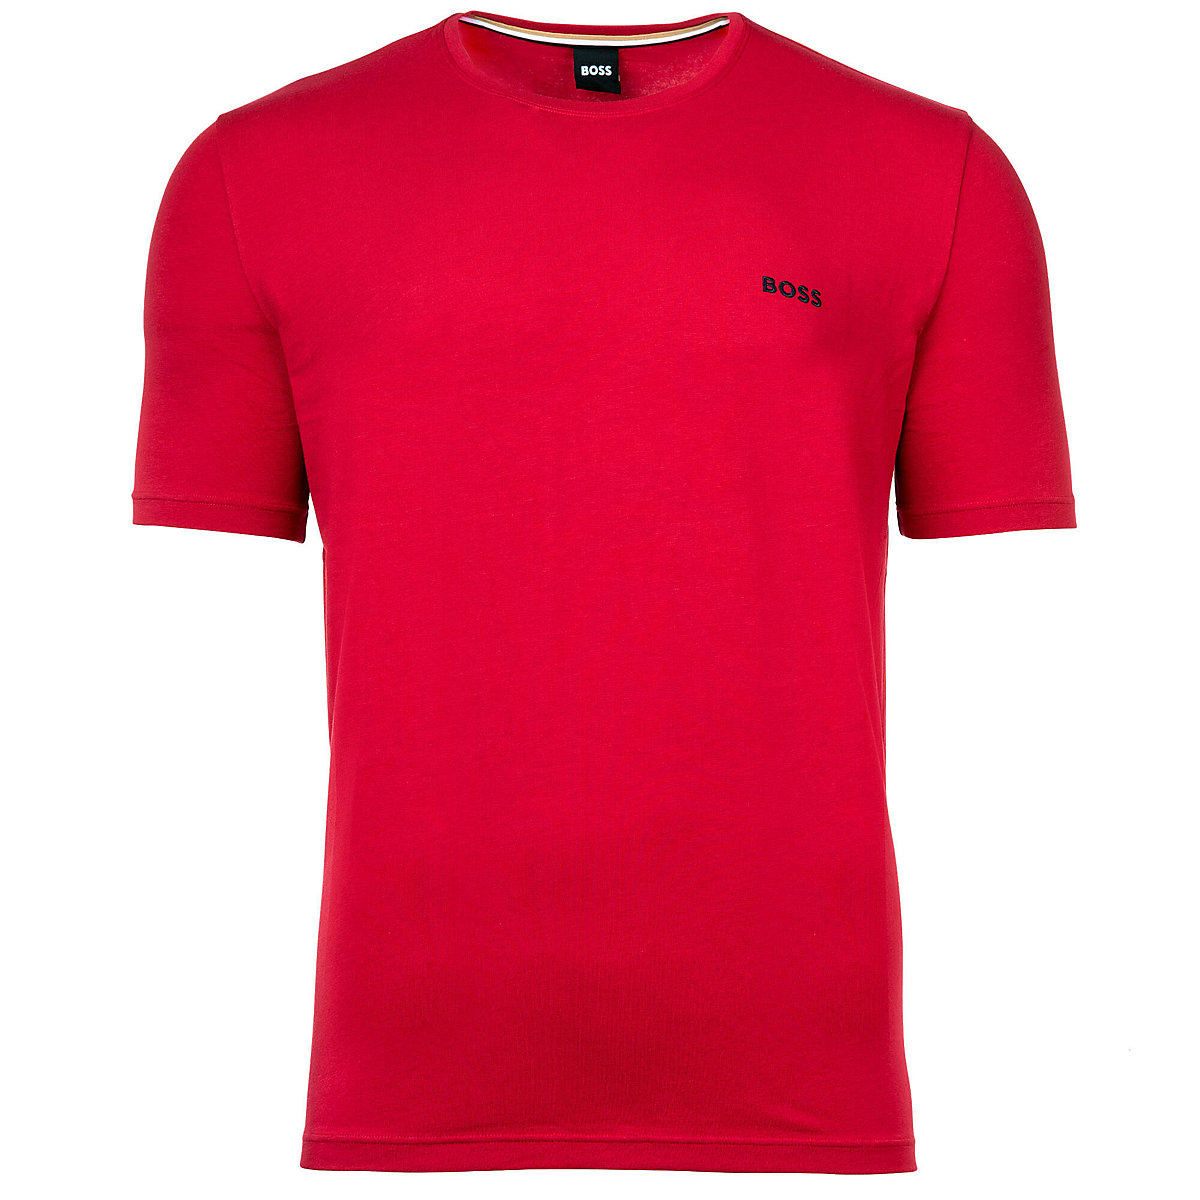 BOSS Herren T-Shirt Mix & Match Rundhals Baumwolle Logo einfarbig kurzarm T-Shirts rot